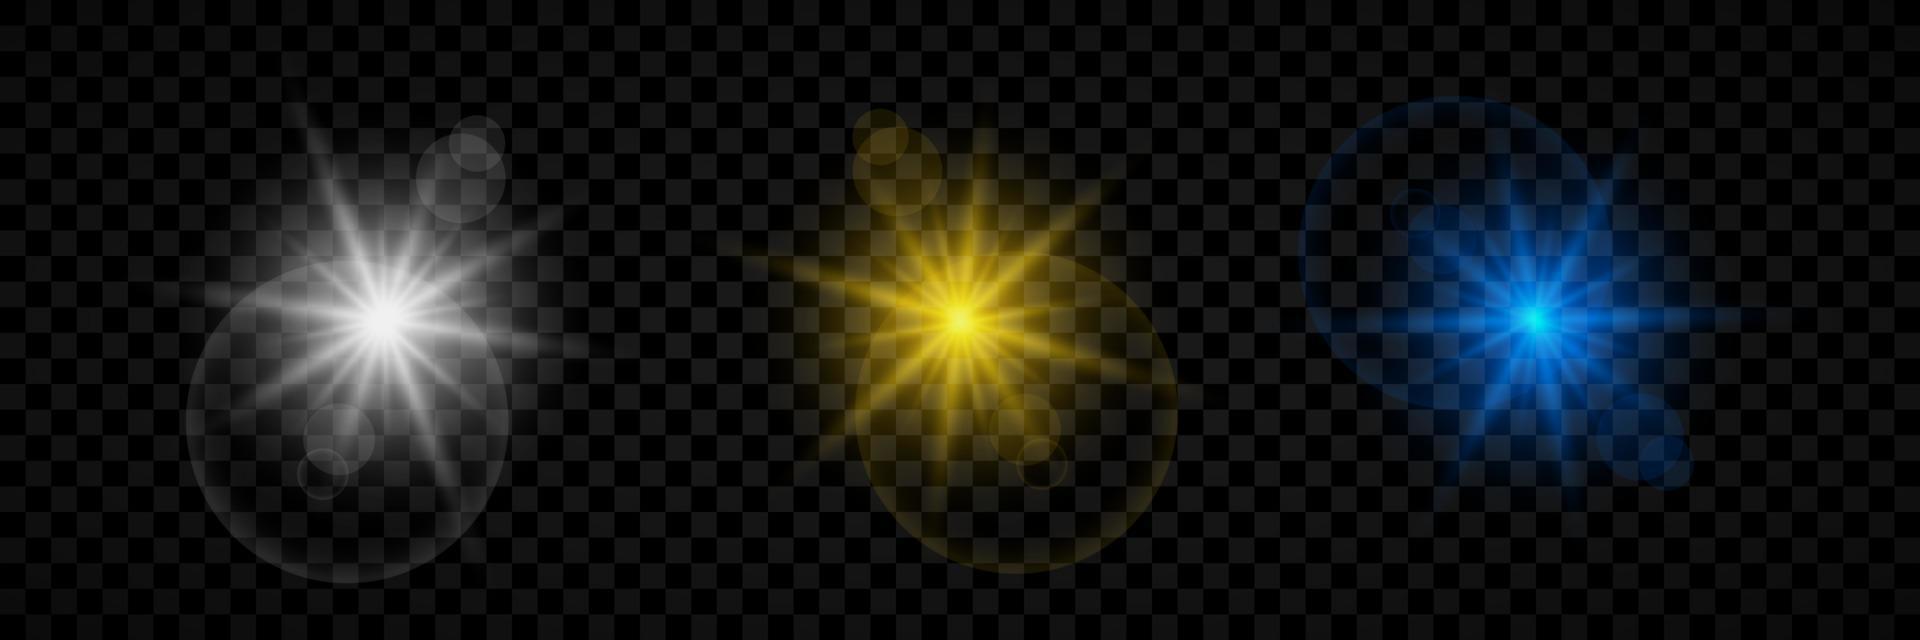 Lichteffekt von Lens Flares. satz von drei weiß, gelb und blau leuchtenden lichtern starburst-effekten mit funkeln. Vektor-Illustration vektor